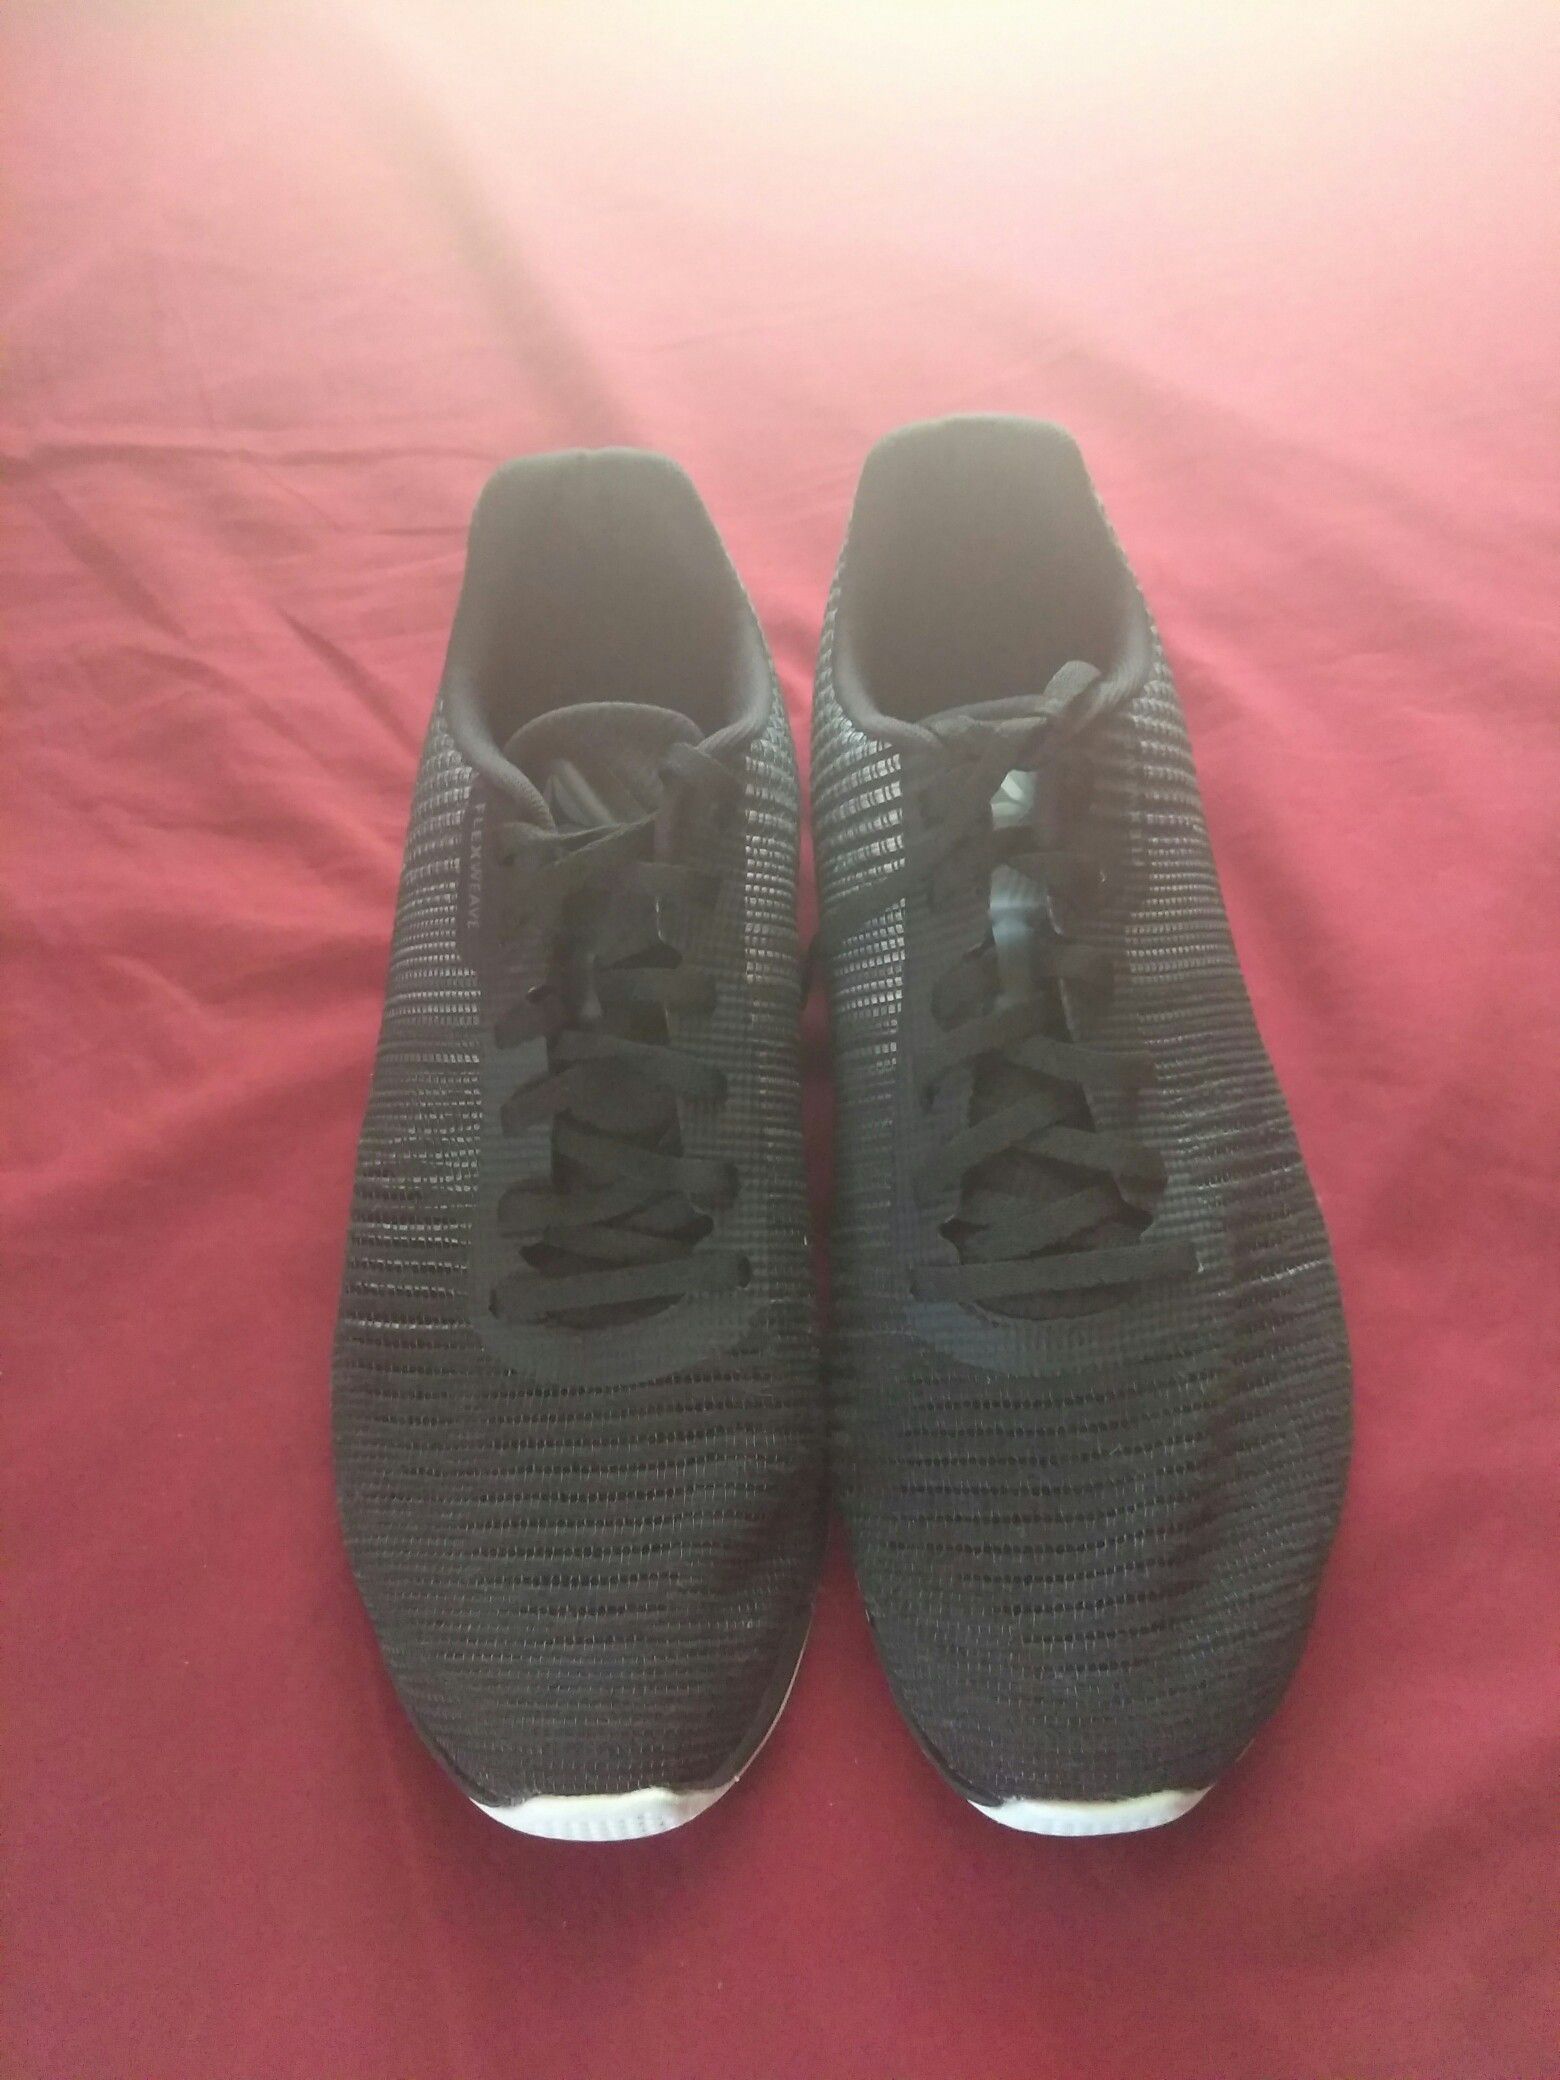 Black Reebok shoes size 10.5